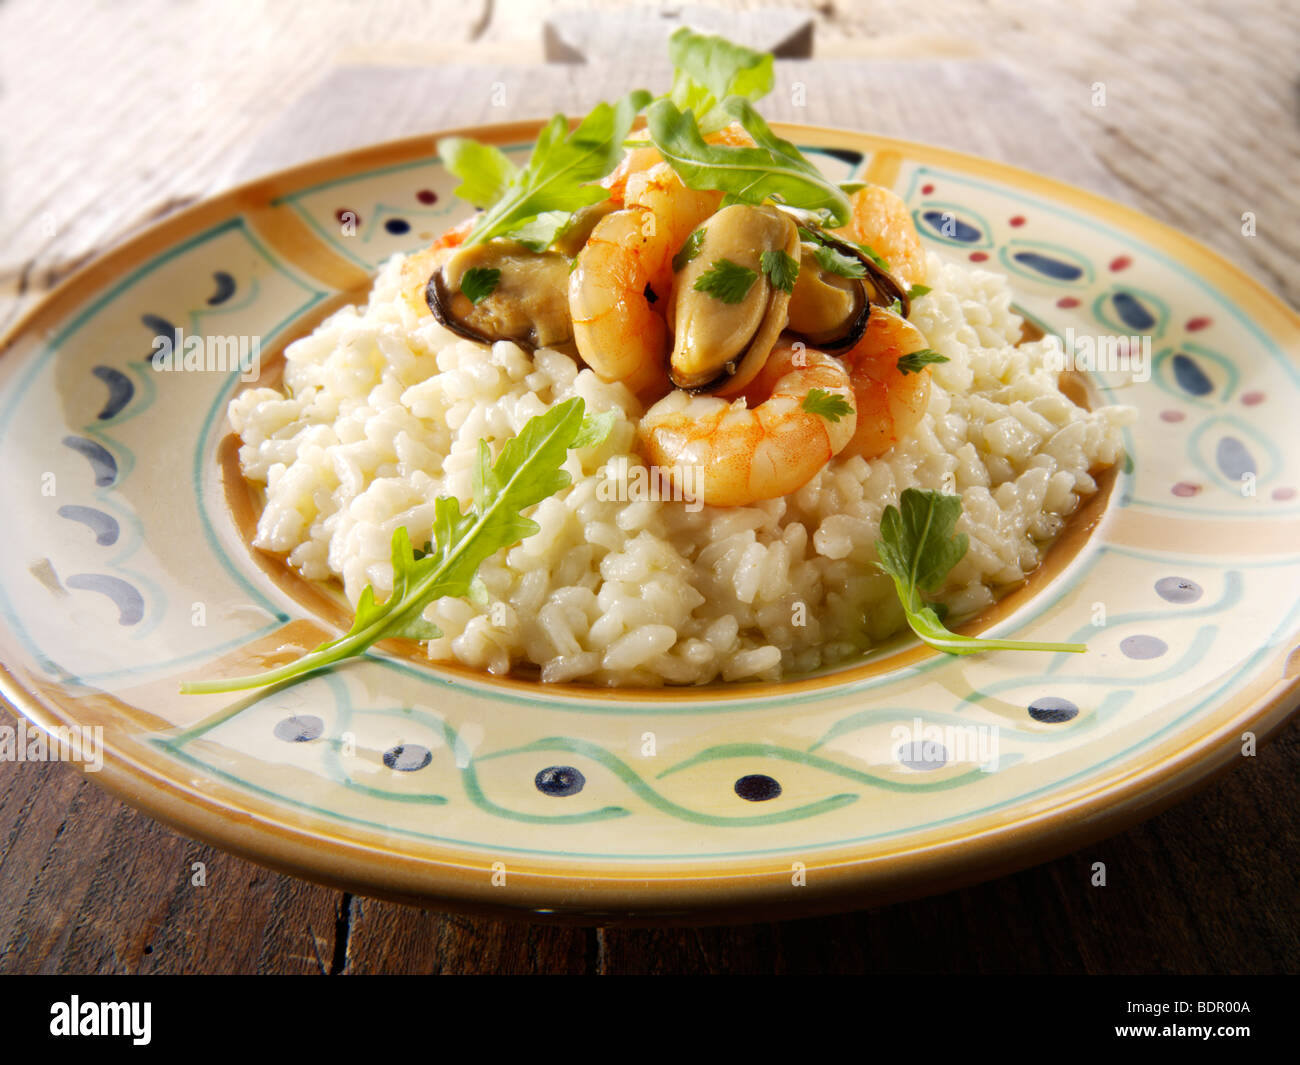 Crevettes fraîches cuites et les moules risotto, servi sur une table. Conseil de dégustation Banque D'Images